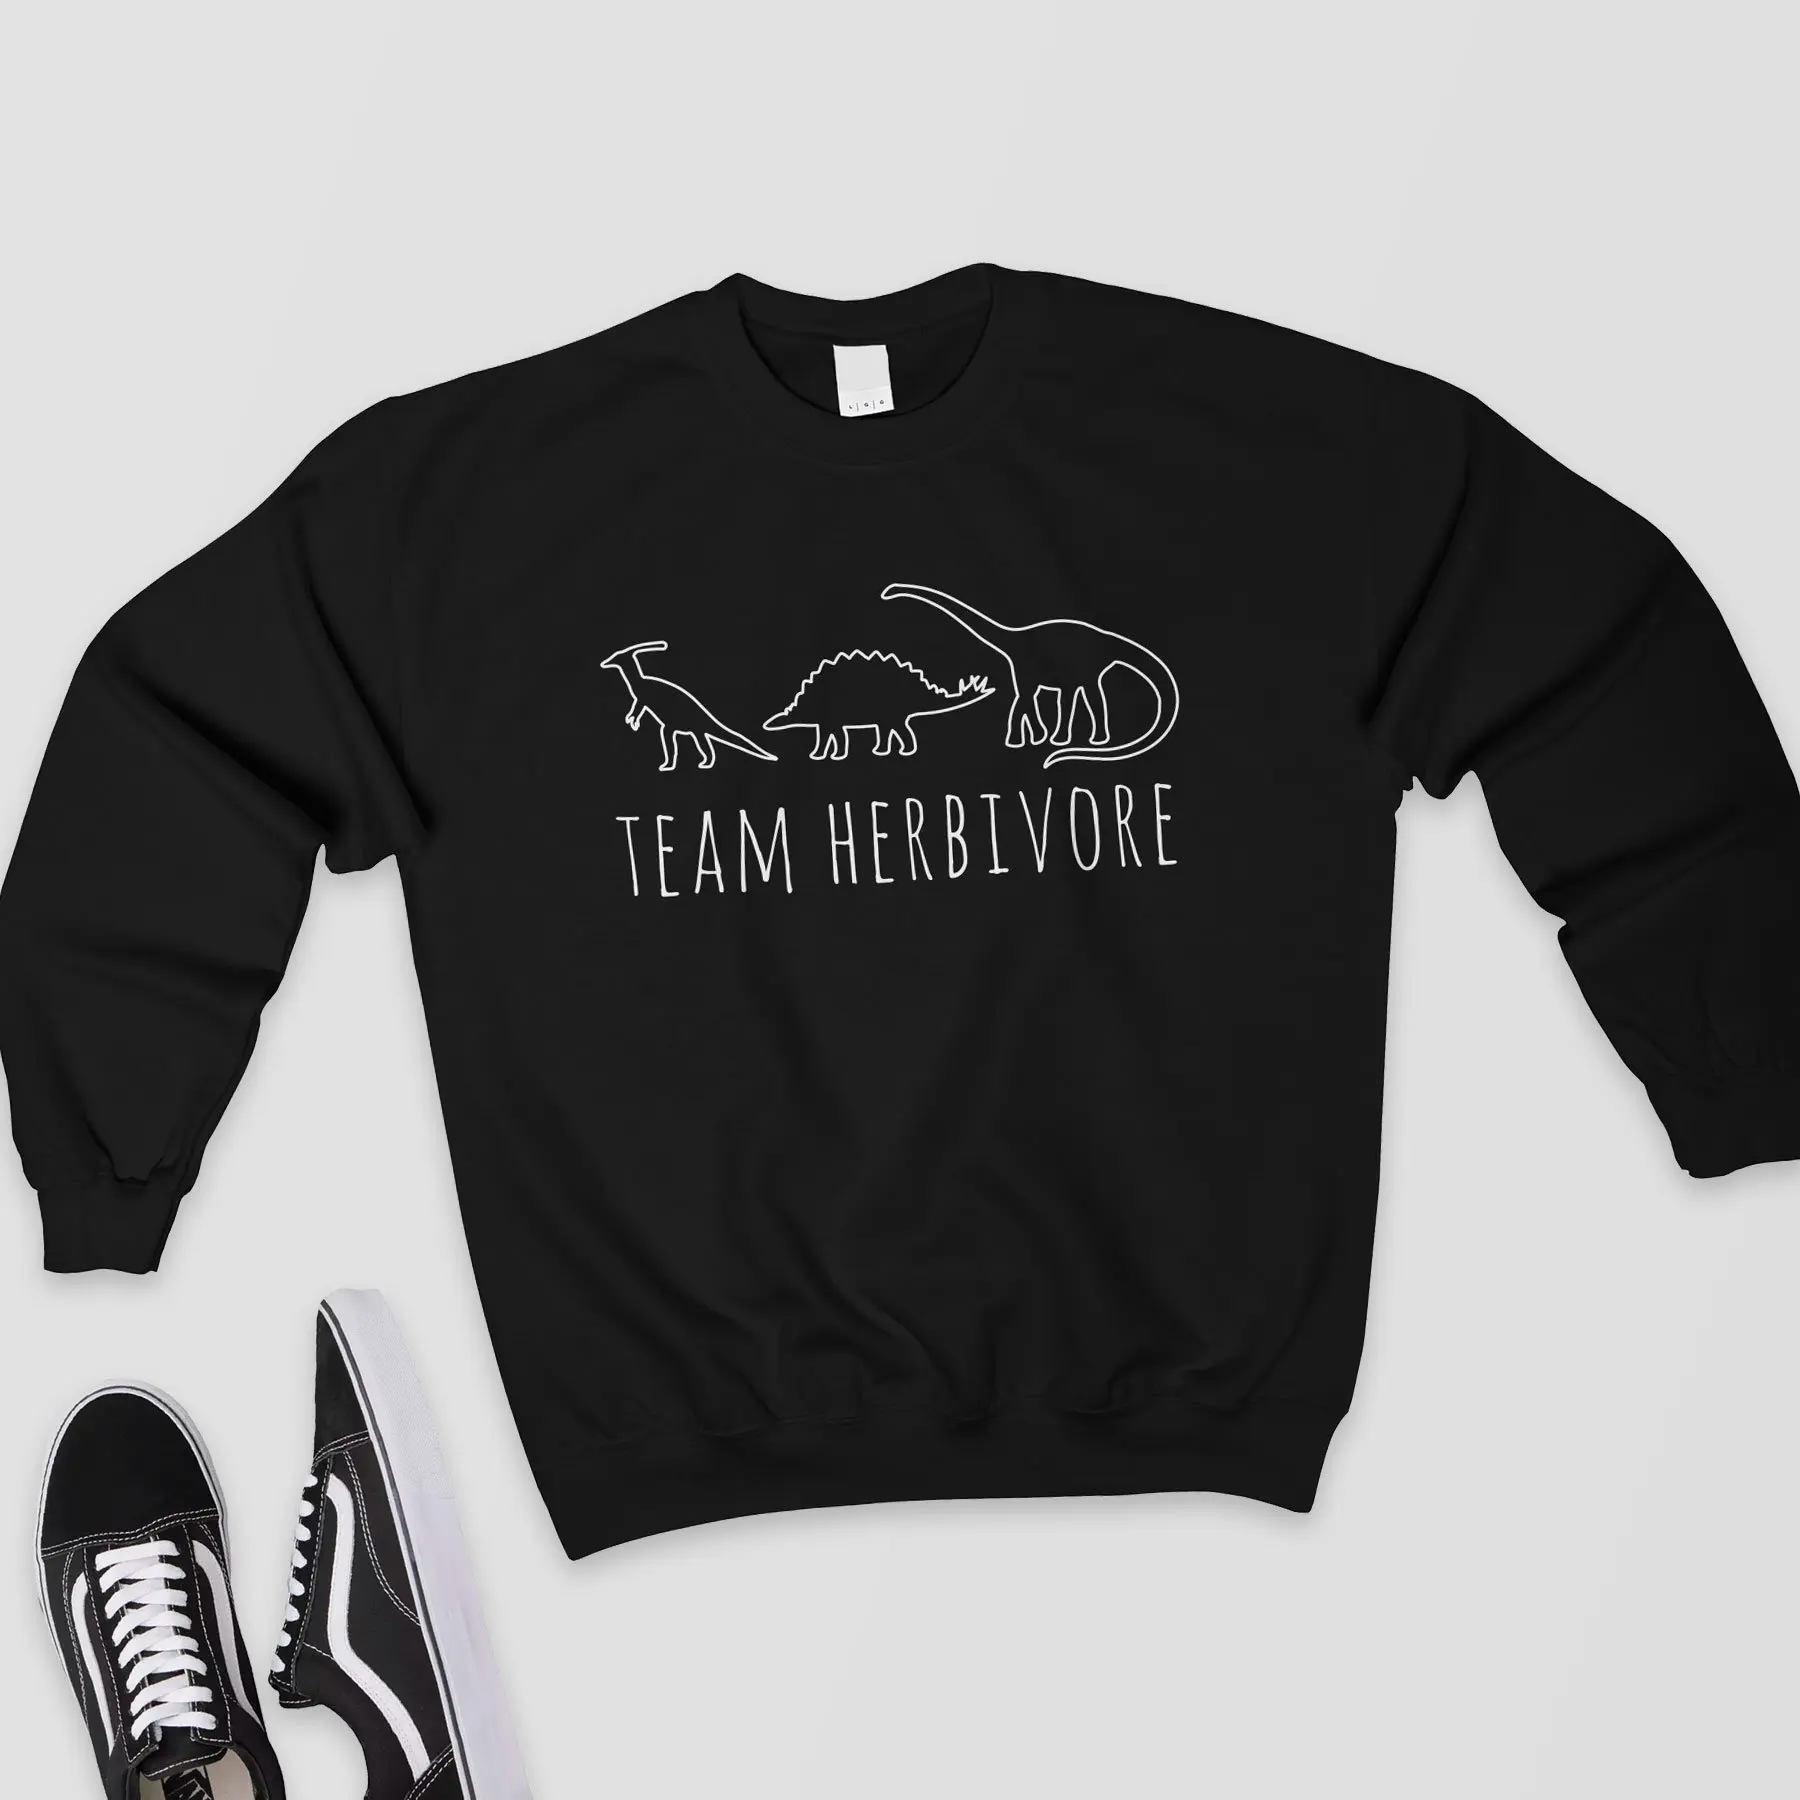 Team Herbivore, толстовка, женские Графические Топы, Harajuku, джемпер, веганская рубашка, Вегетарианская рубашка с динозаврами, толстовки, готические пуловеры - Цвет: Черный